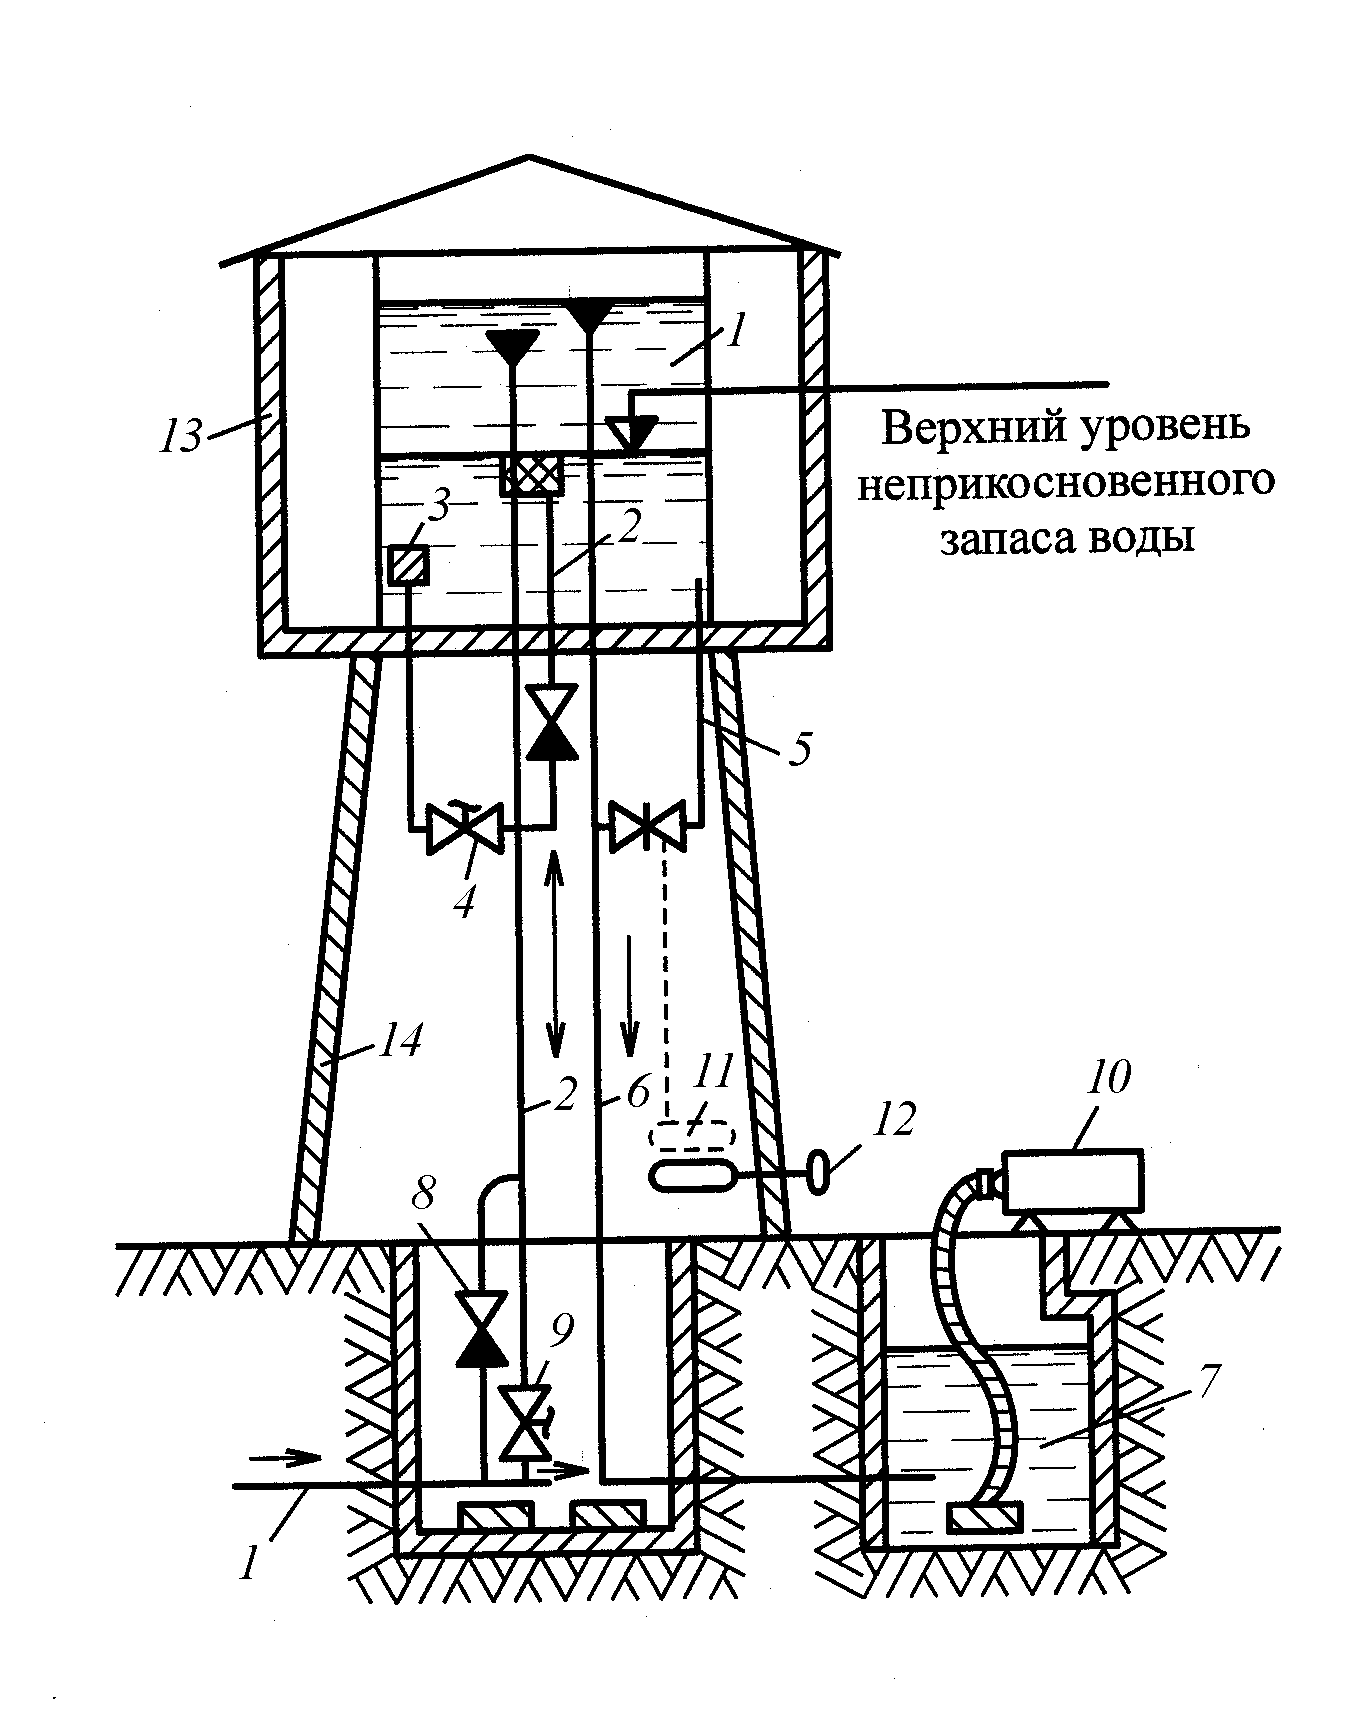 устройство водонапорной башни рожновского